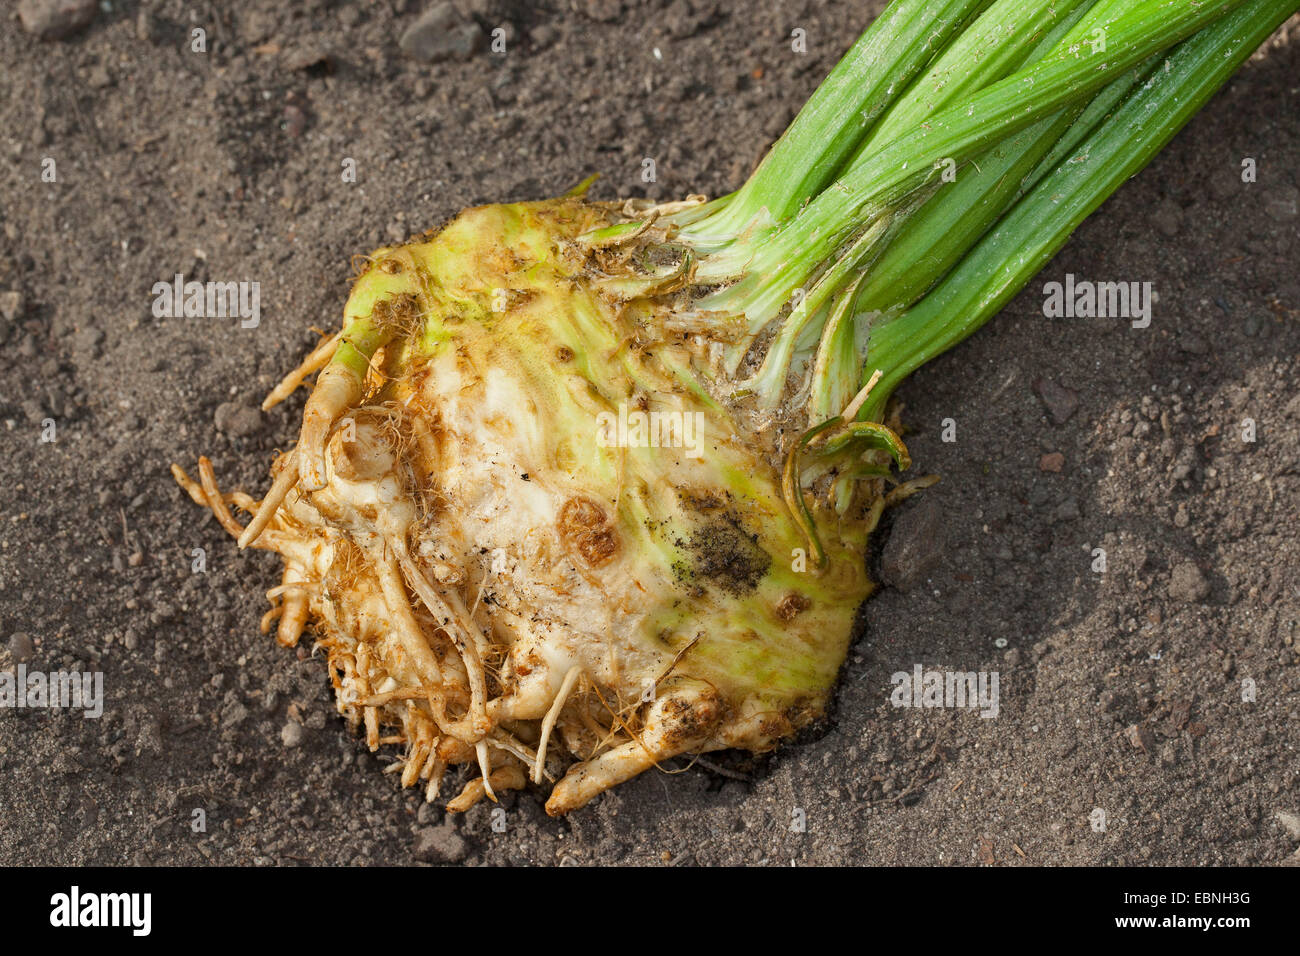 Celery, Celeriac, Turnip-rooted celery, Knob celery (Apium graveolens var. rapaceum, Apium graveolens rapaceum, Apium rapaceum), harvested tuber, Germany Stock Photo